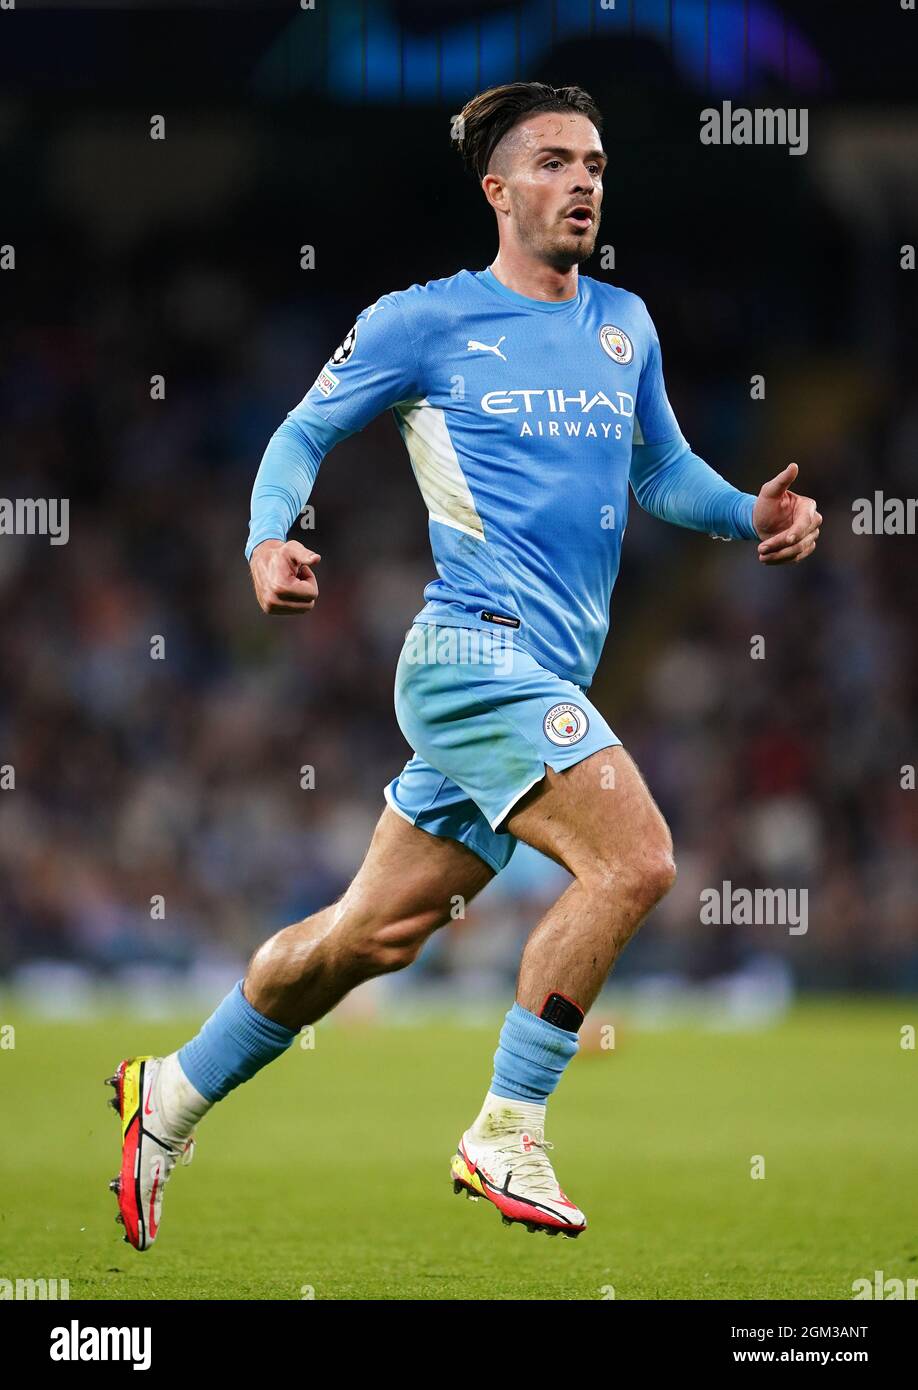 Jack Grealish von Manchester City während des UEFA Champions League-Spiels der Gruppe A im Etihad Stadium, Manchester. Bilddatum: Mittwoch, 15. September 2021. Stockfoto